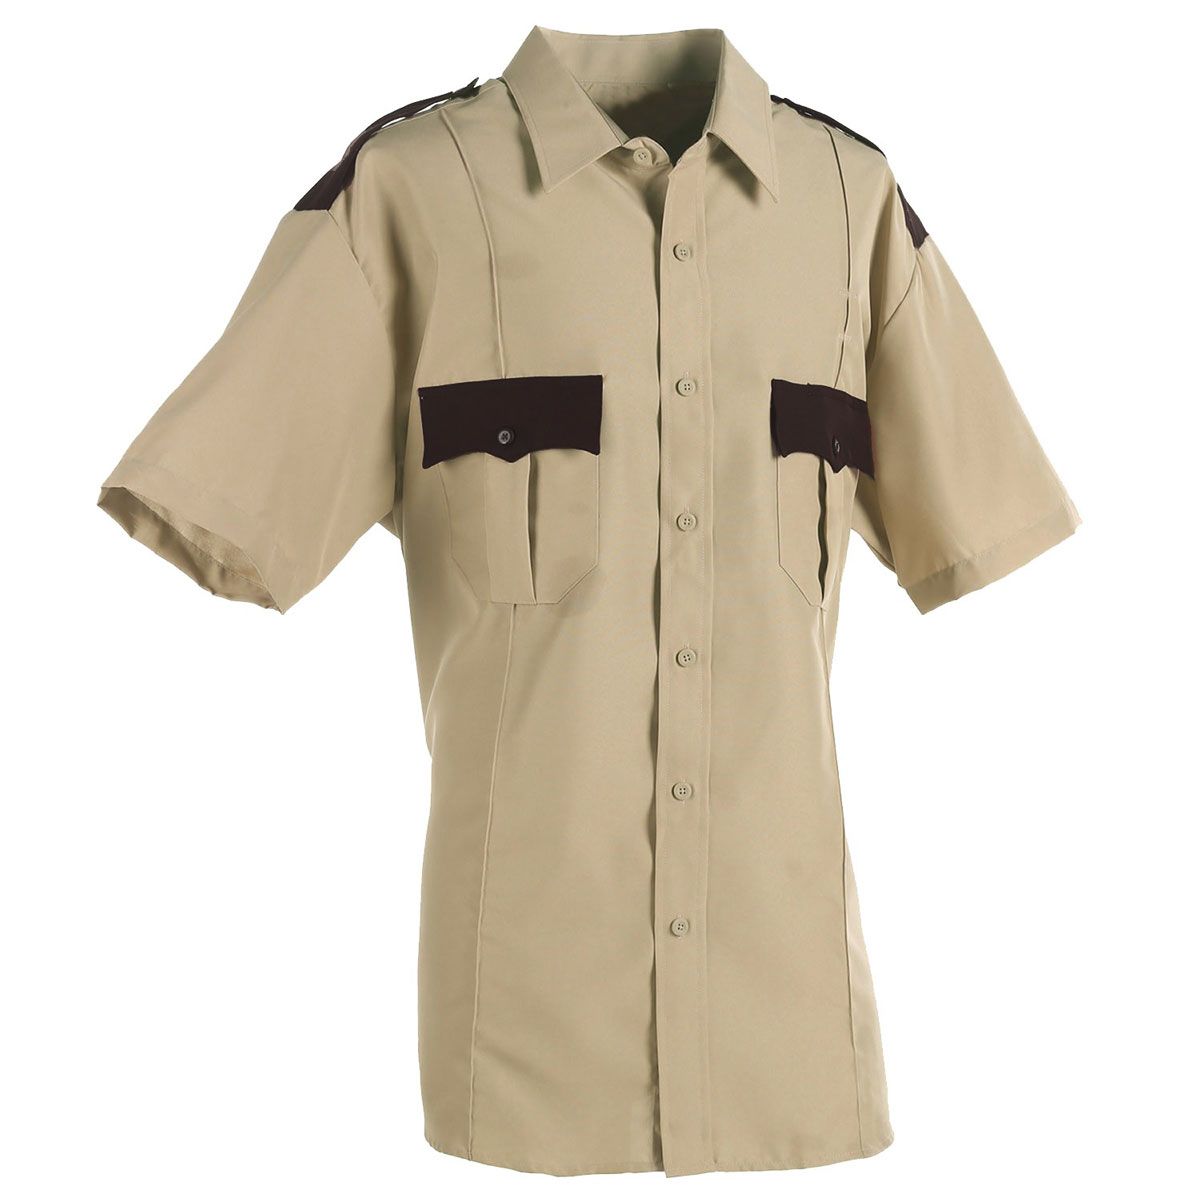 First Class 100% Polyester Long Sleeve Men's Uniform Shirt Tan 